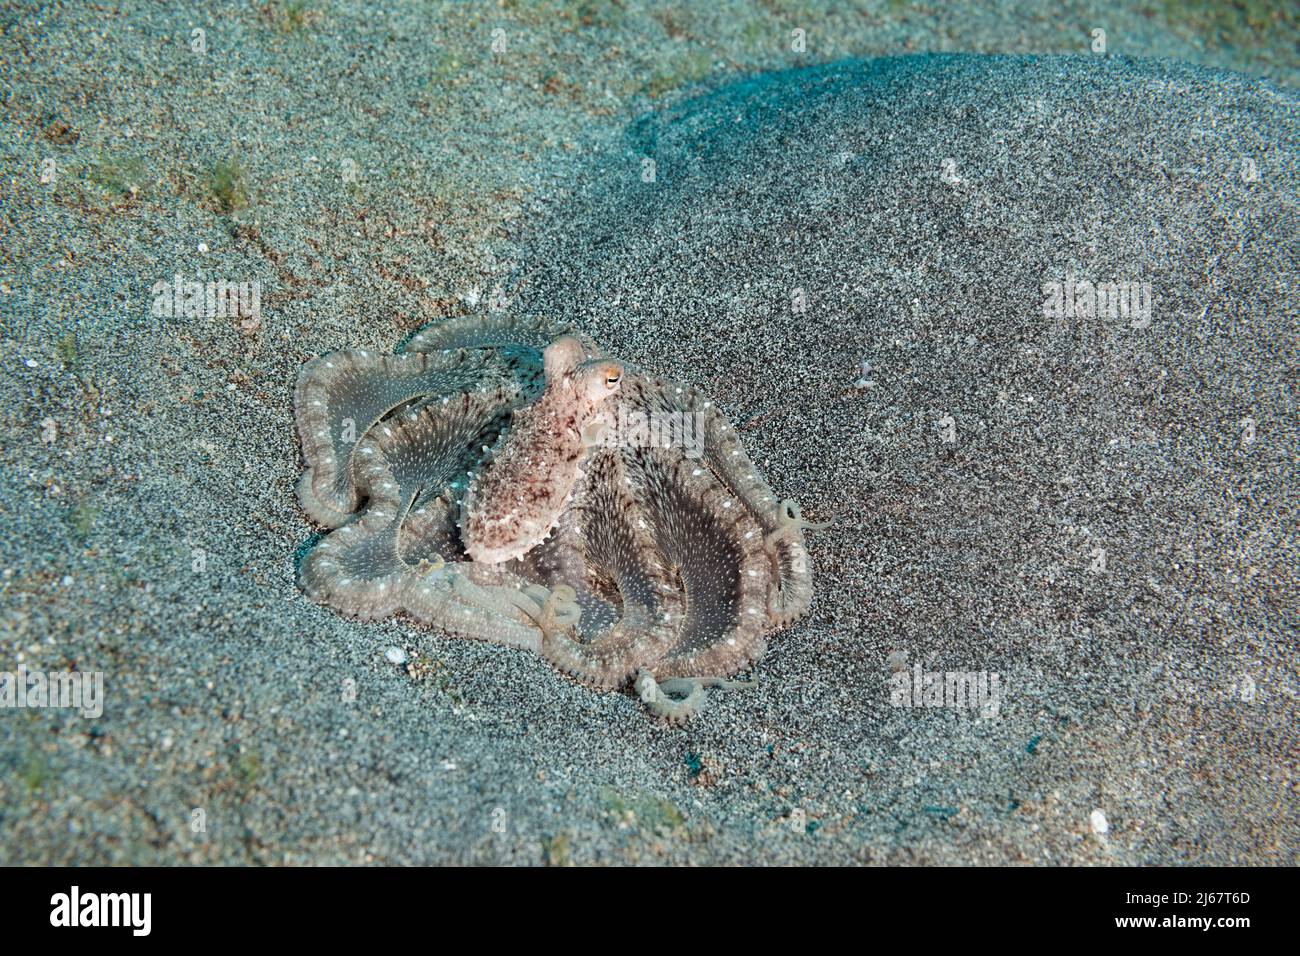 Hawaiano polpo di sabbia a lungo armato, Thaumoctopus, Abdopus, o Macrotritopus sp., (probabilmente una specie non descritta, probabilmente endemica ), Kona, Hawaii, USA Foto Stock